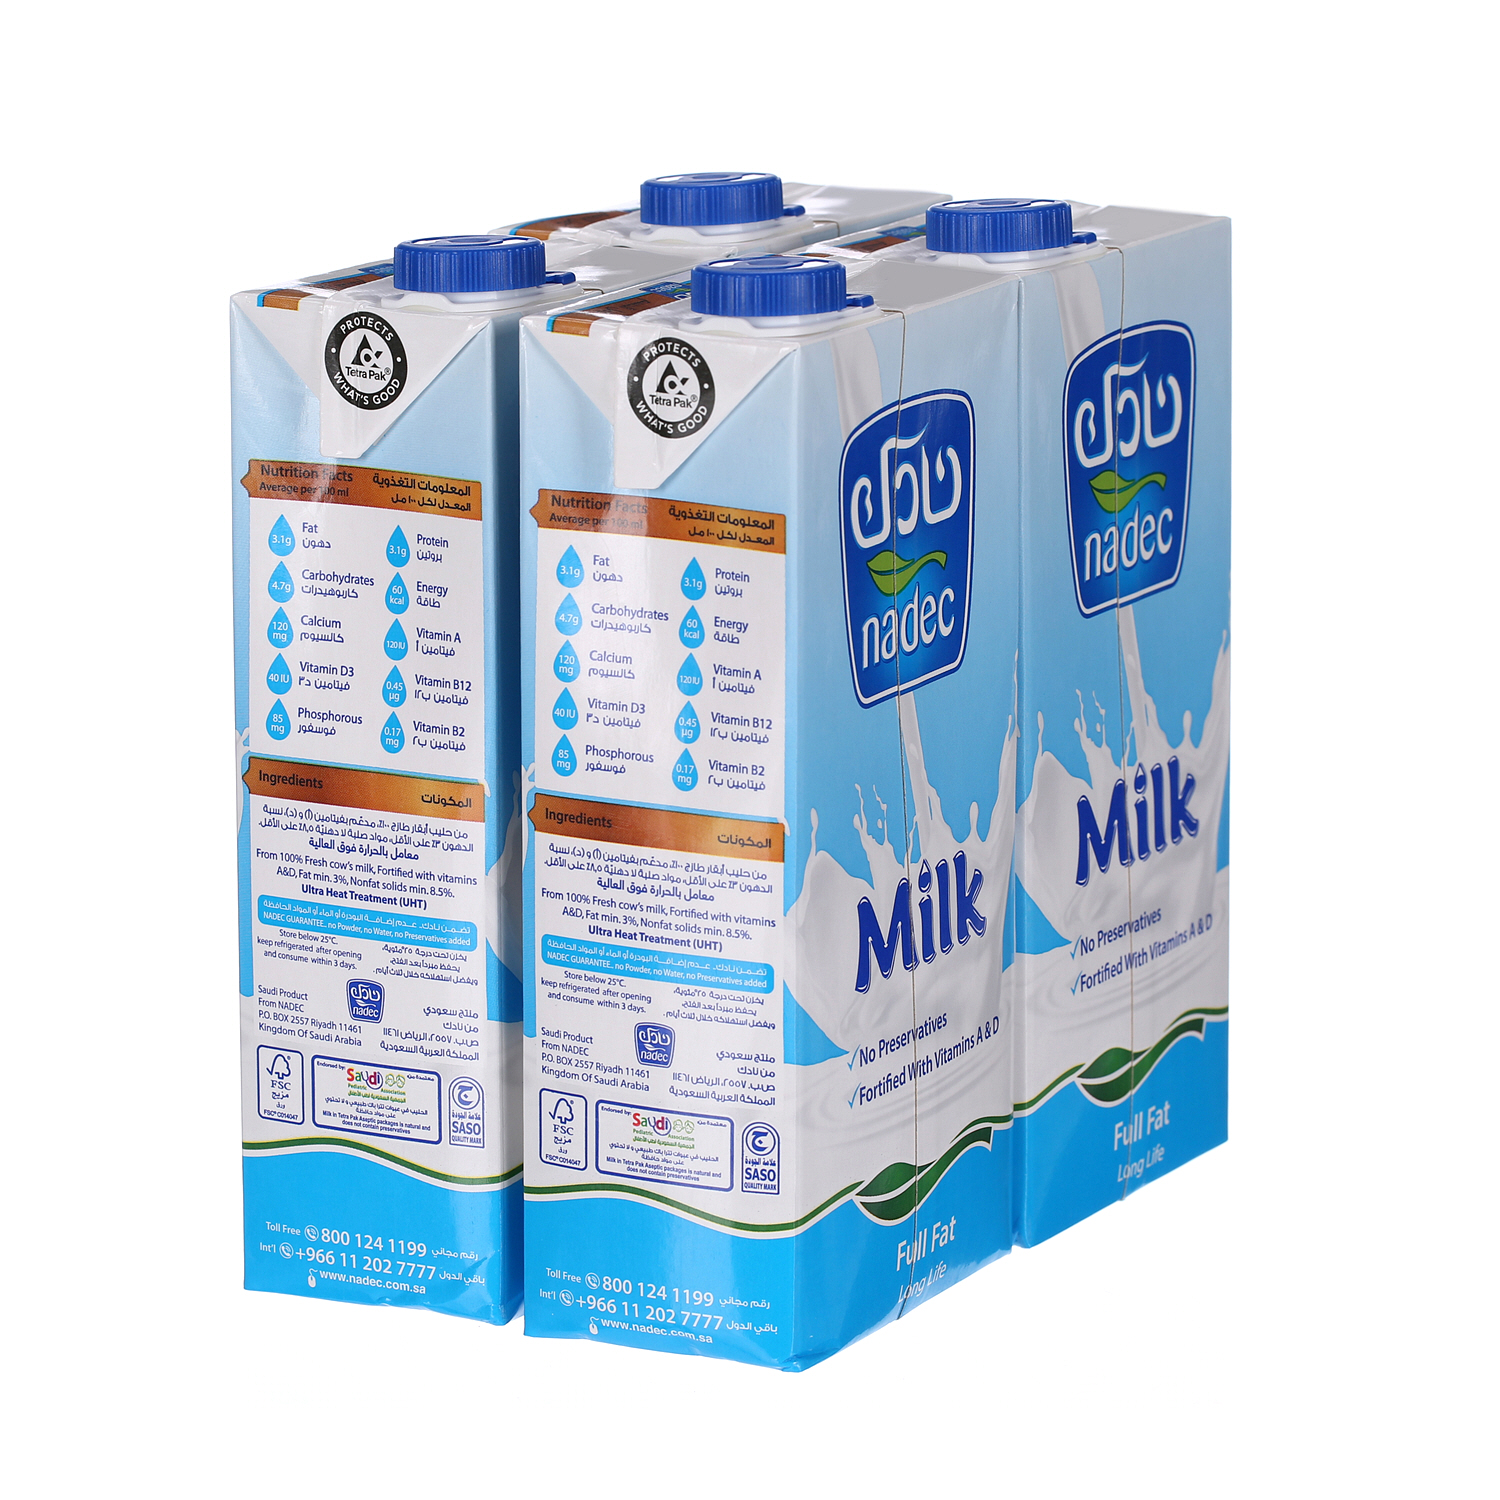 Nadec UHT Milk Full Fat 1 L × 4 Pack